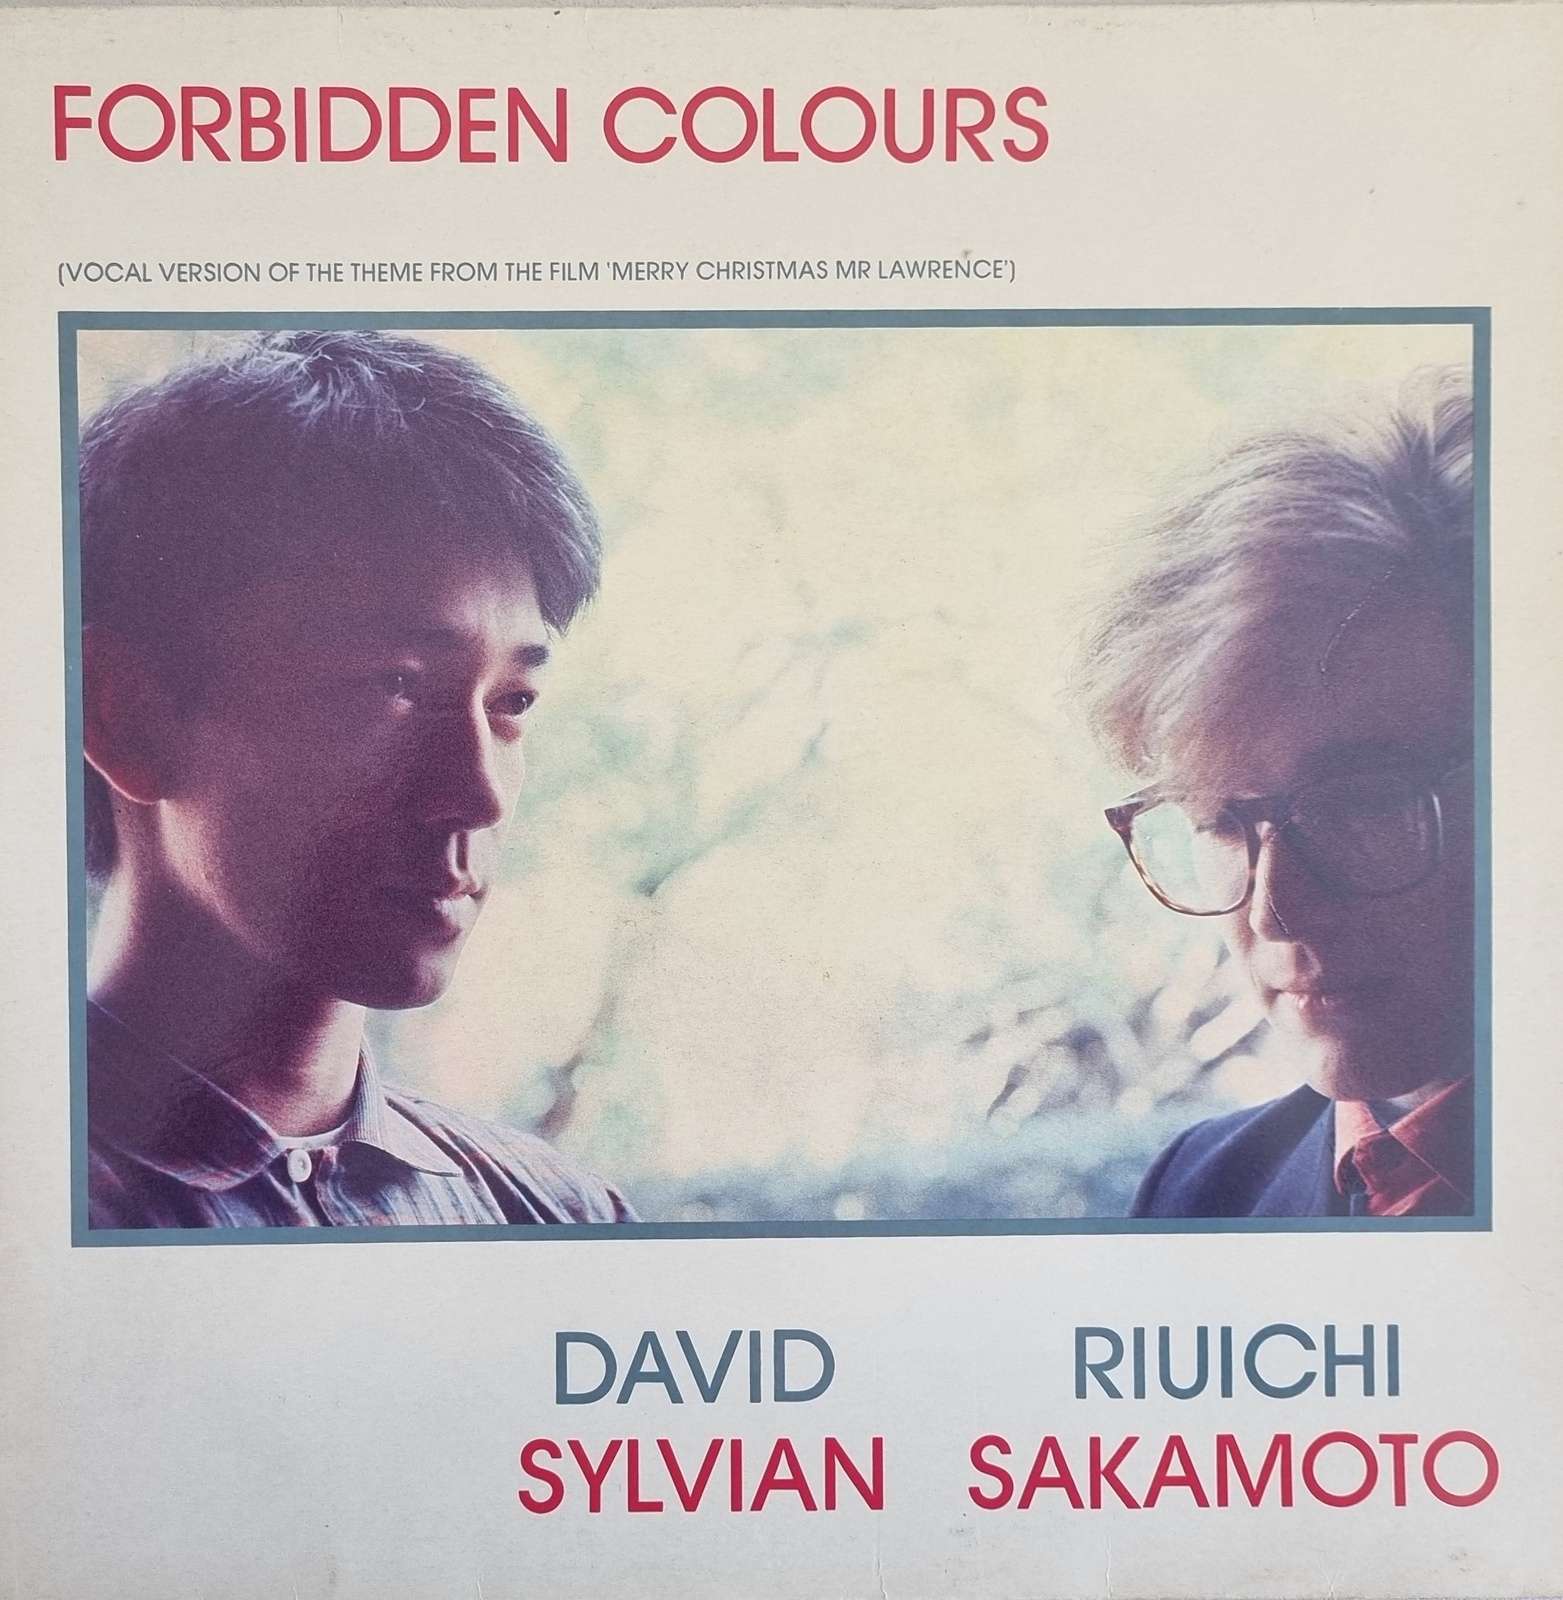 David Sylvian Riuichi Sakamoto - Forbidden Colours (12 inch single)